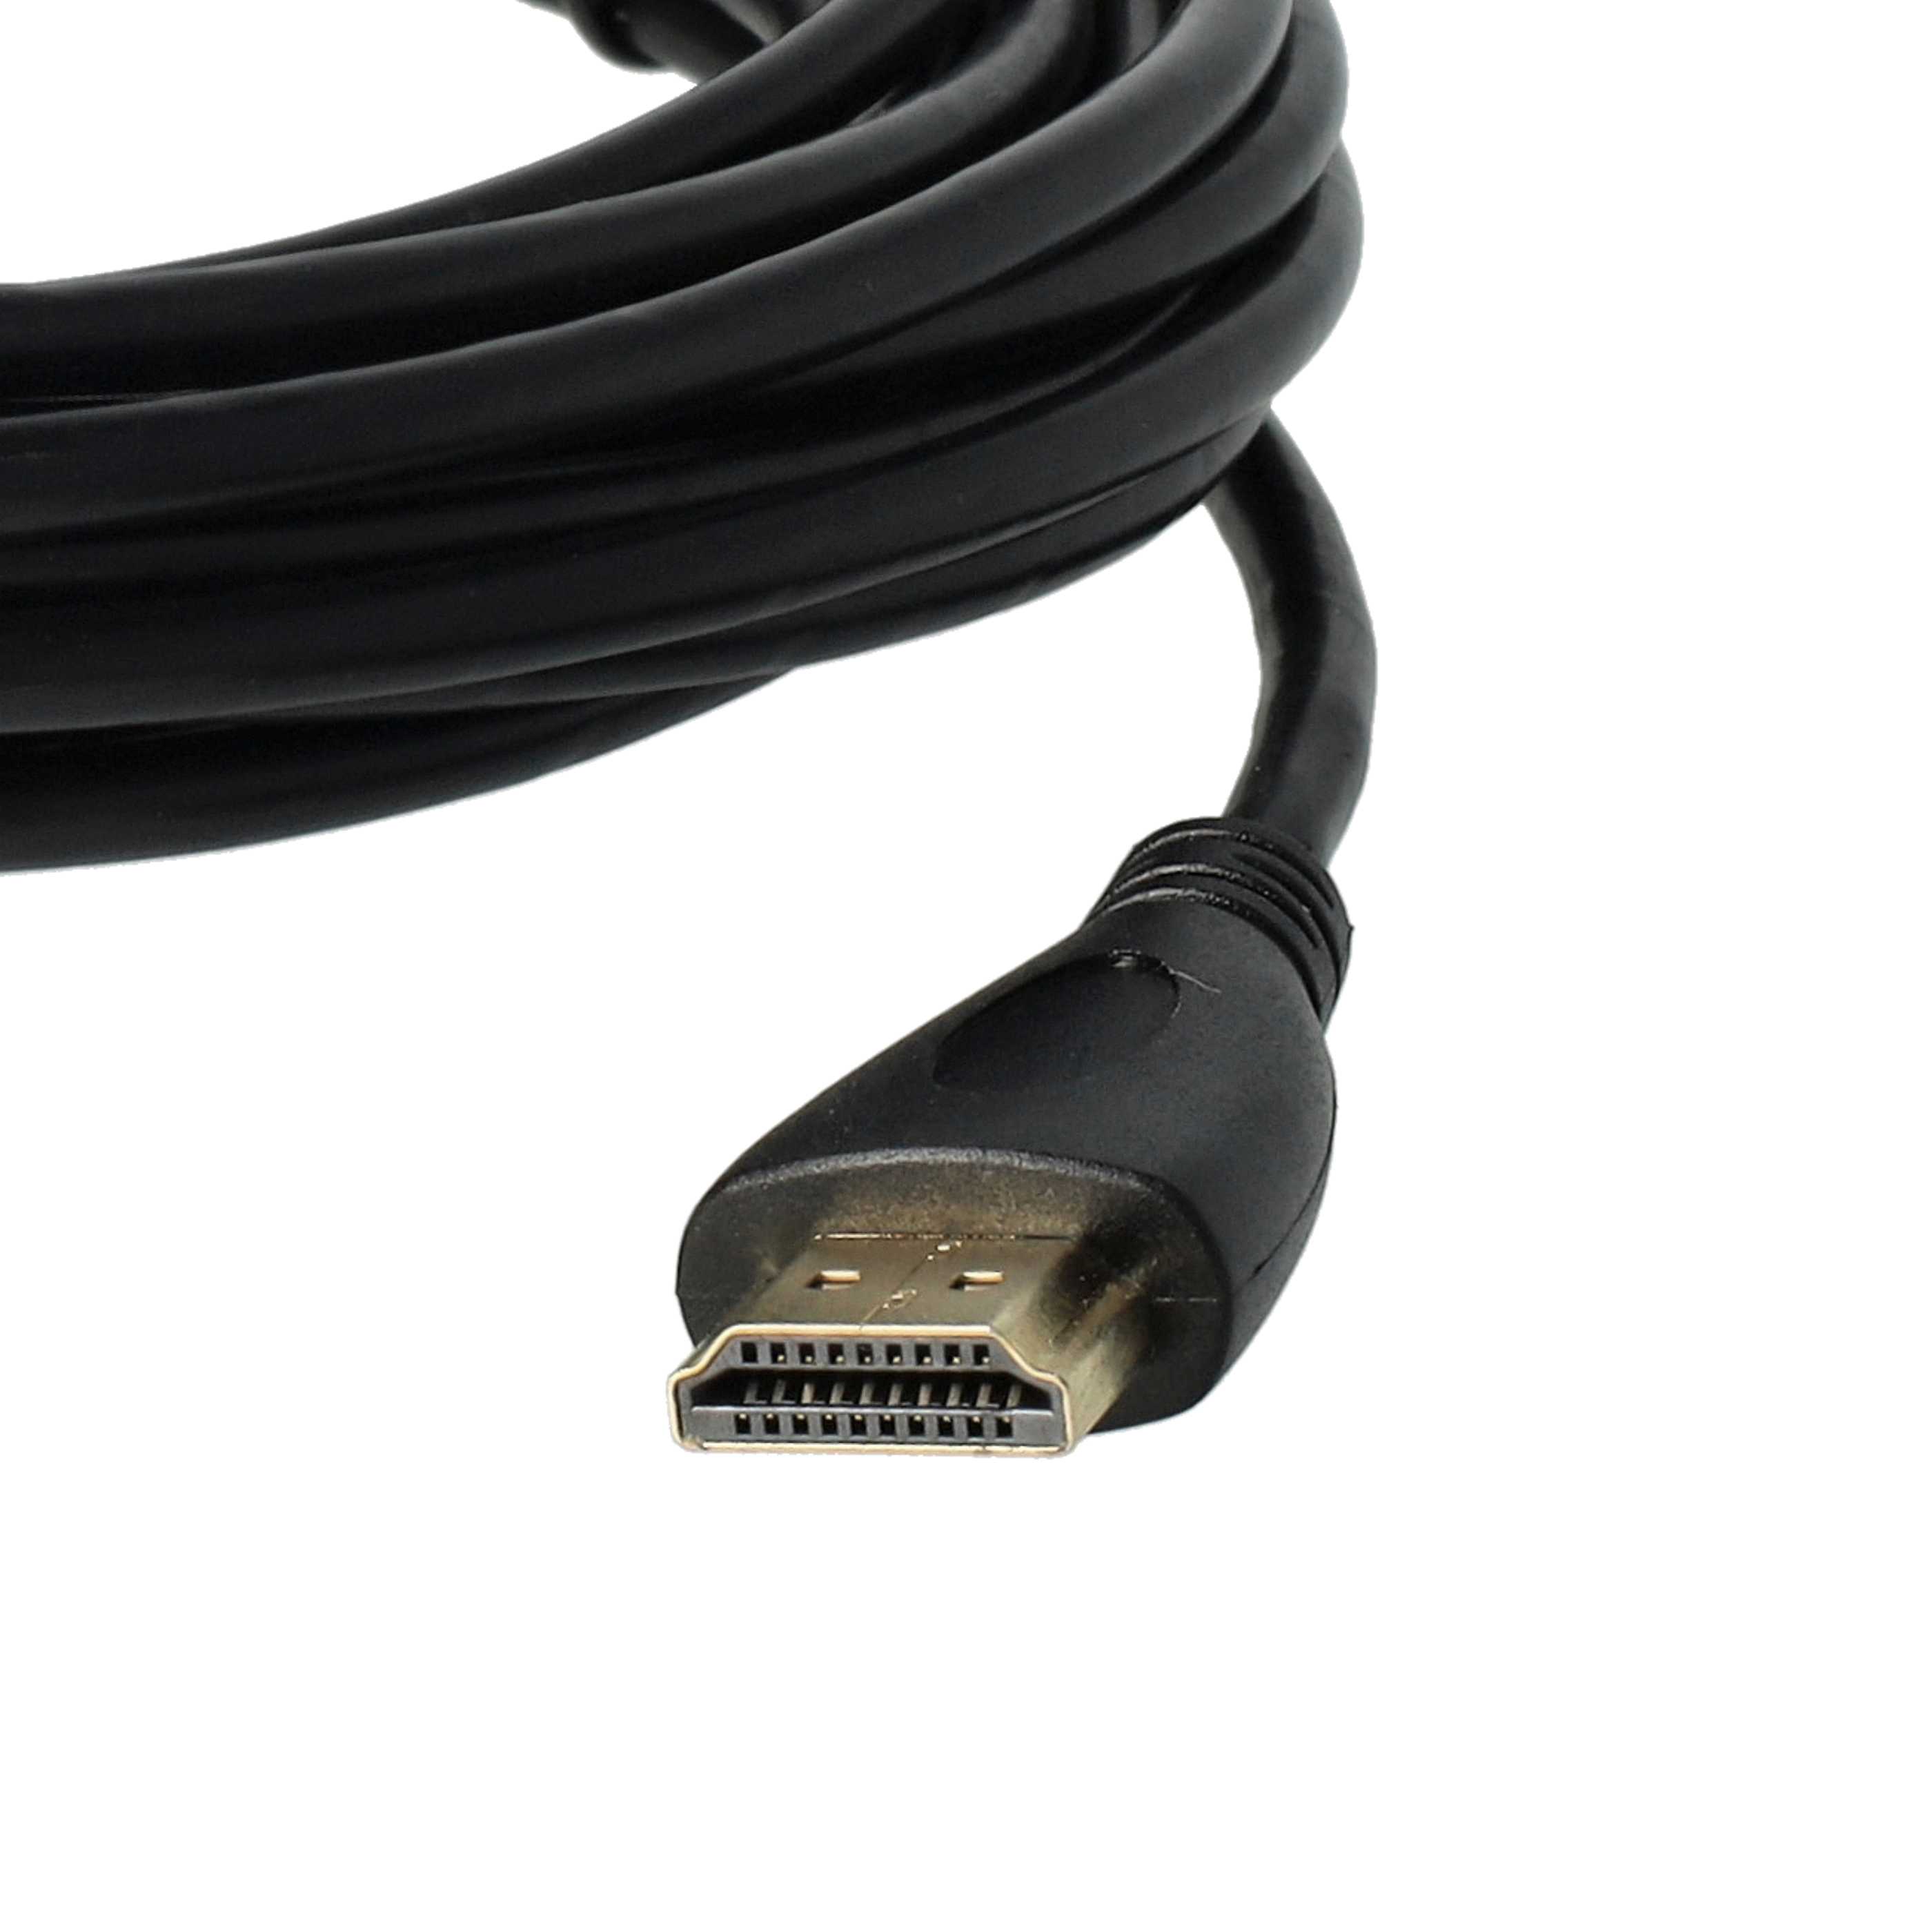 HDMI-Kabel, Micro-HDMI auf HDMI 1.4 5m für Tablet, Smartphone, Kamera